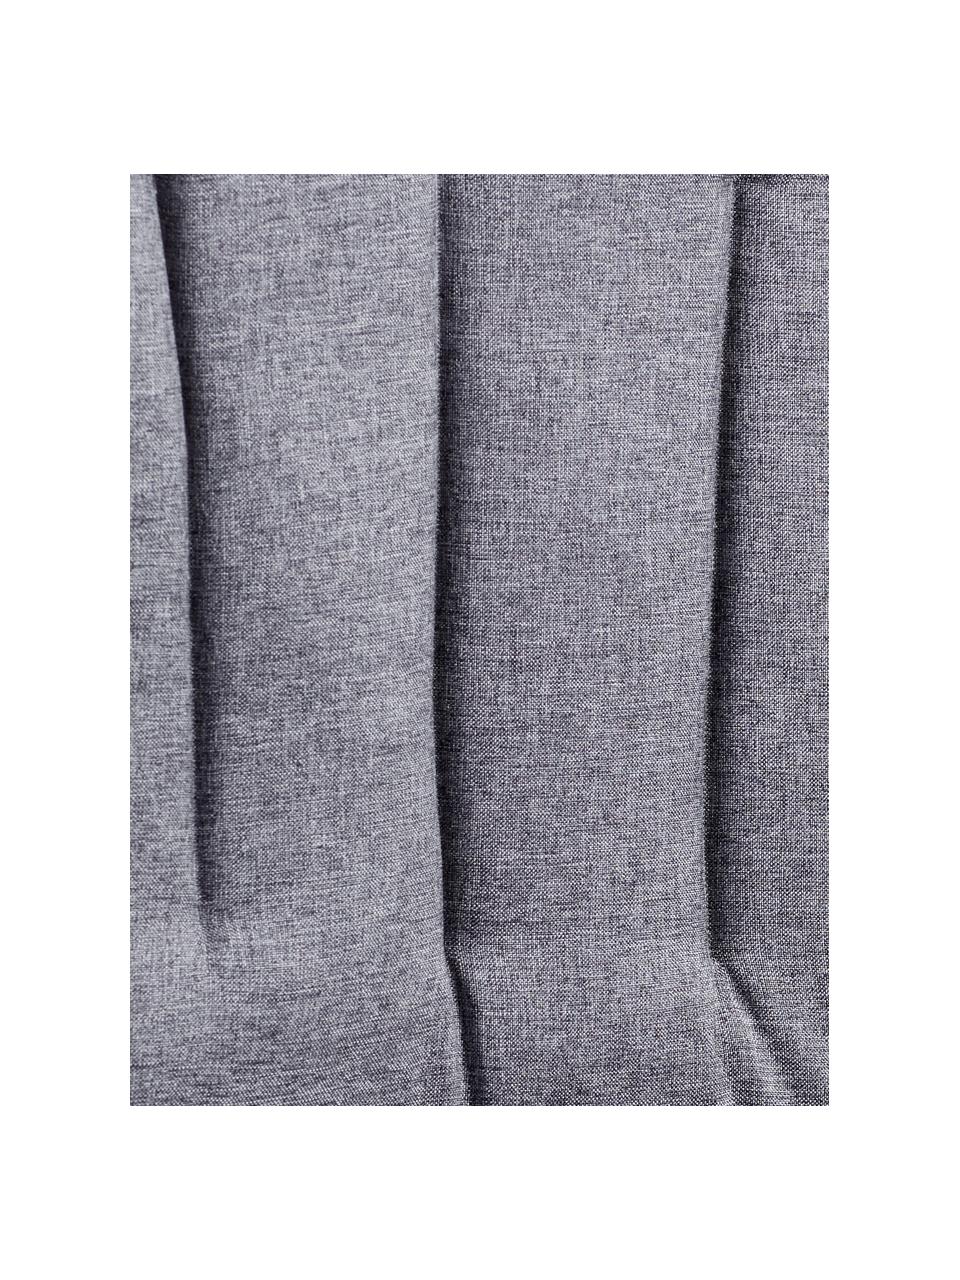 Stuhlauflage Hard & Ellen in Grau, Grau, B 50 x L 85 cm